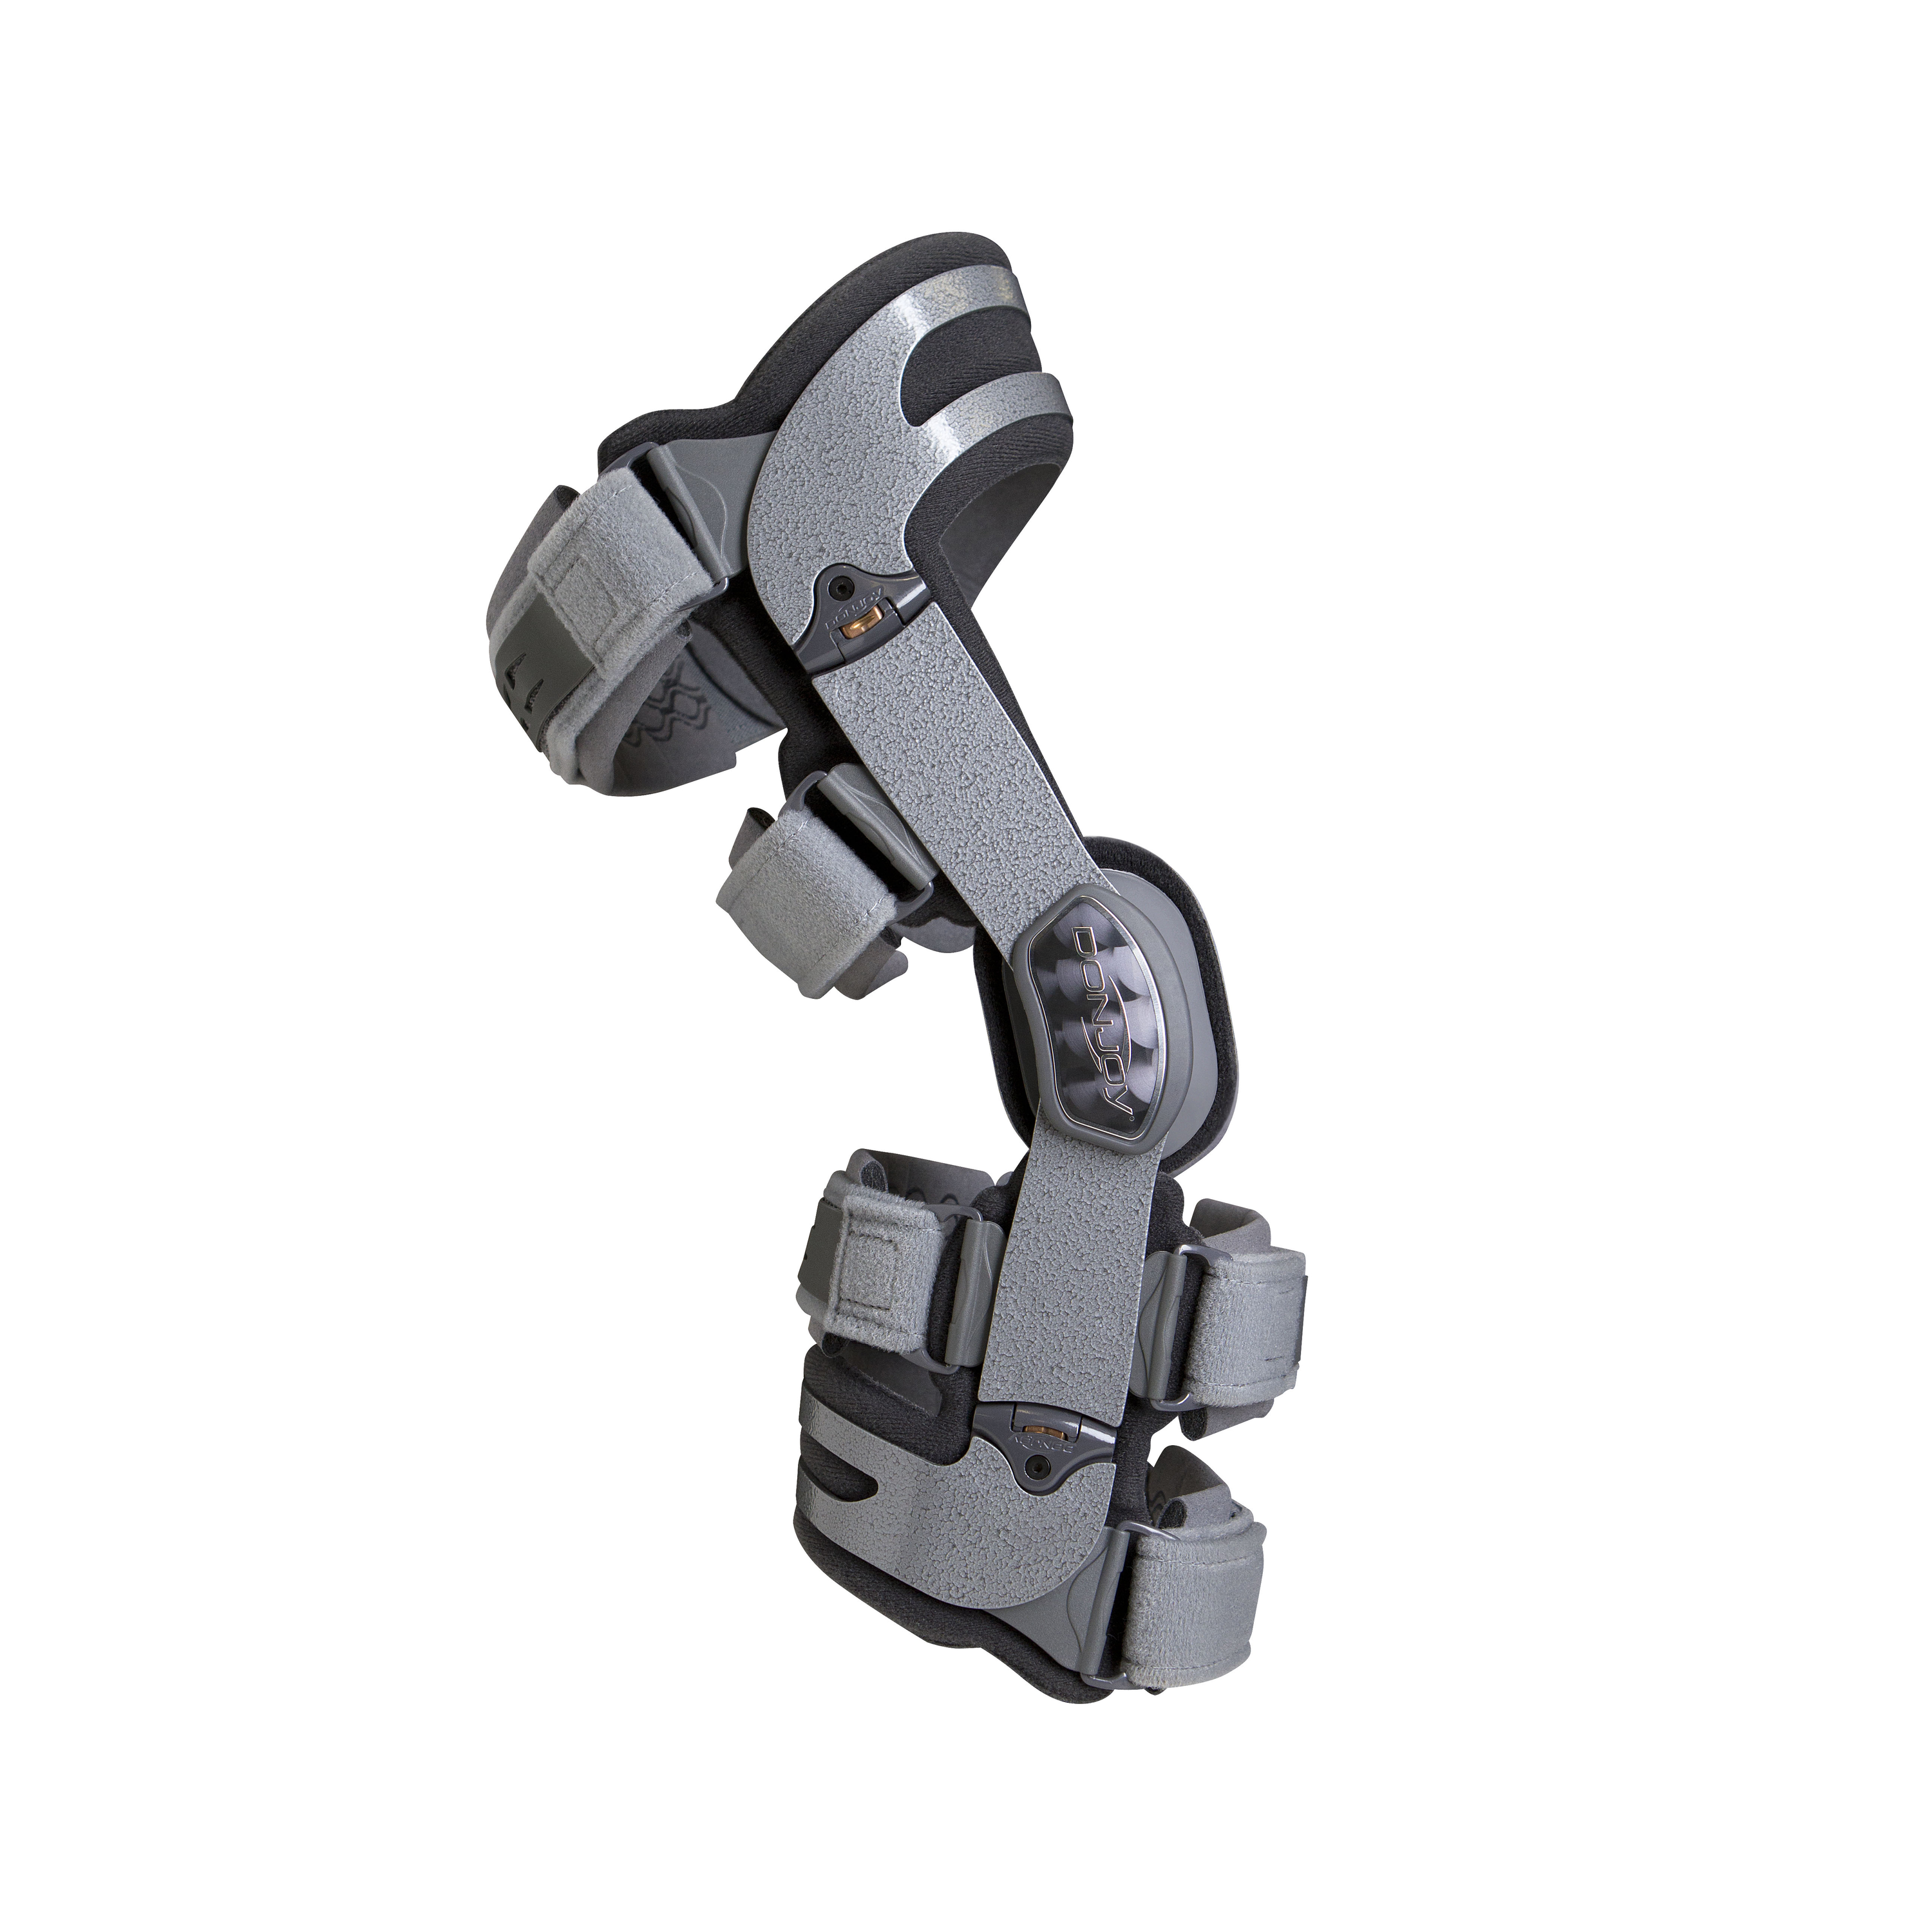 Produktbild DONJOY® OA Adjuster 3, Rahmenorthese zur Entlastung und Stabilisierung des Kniegelenks bei Gonarthrose